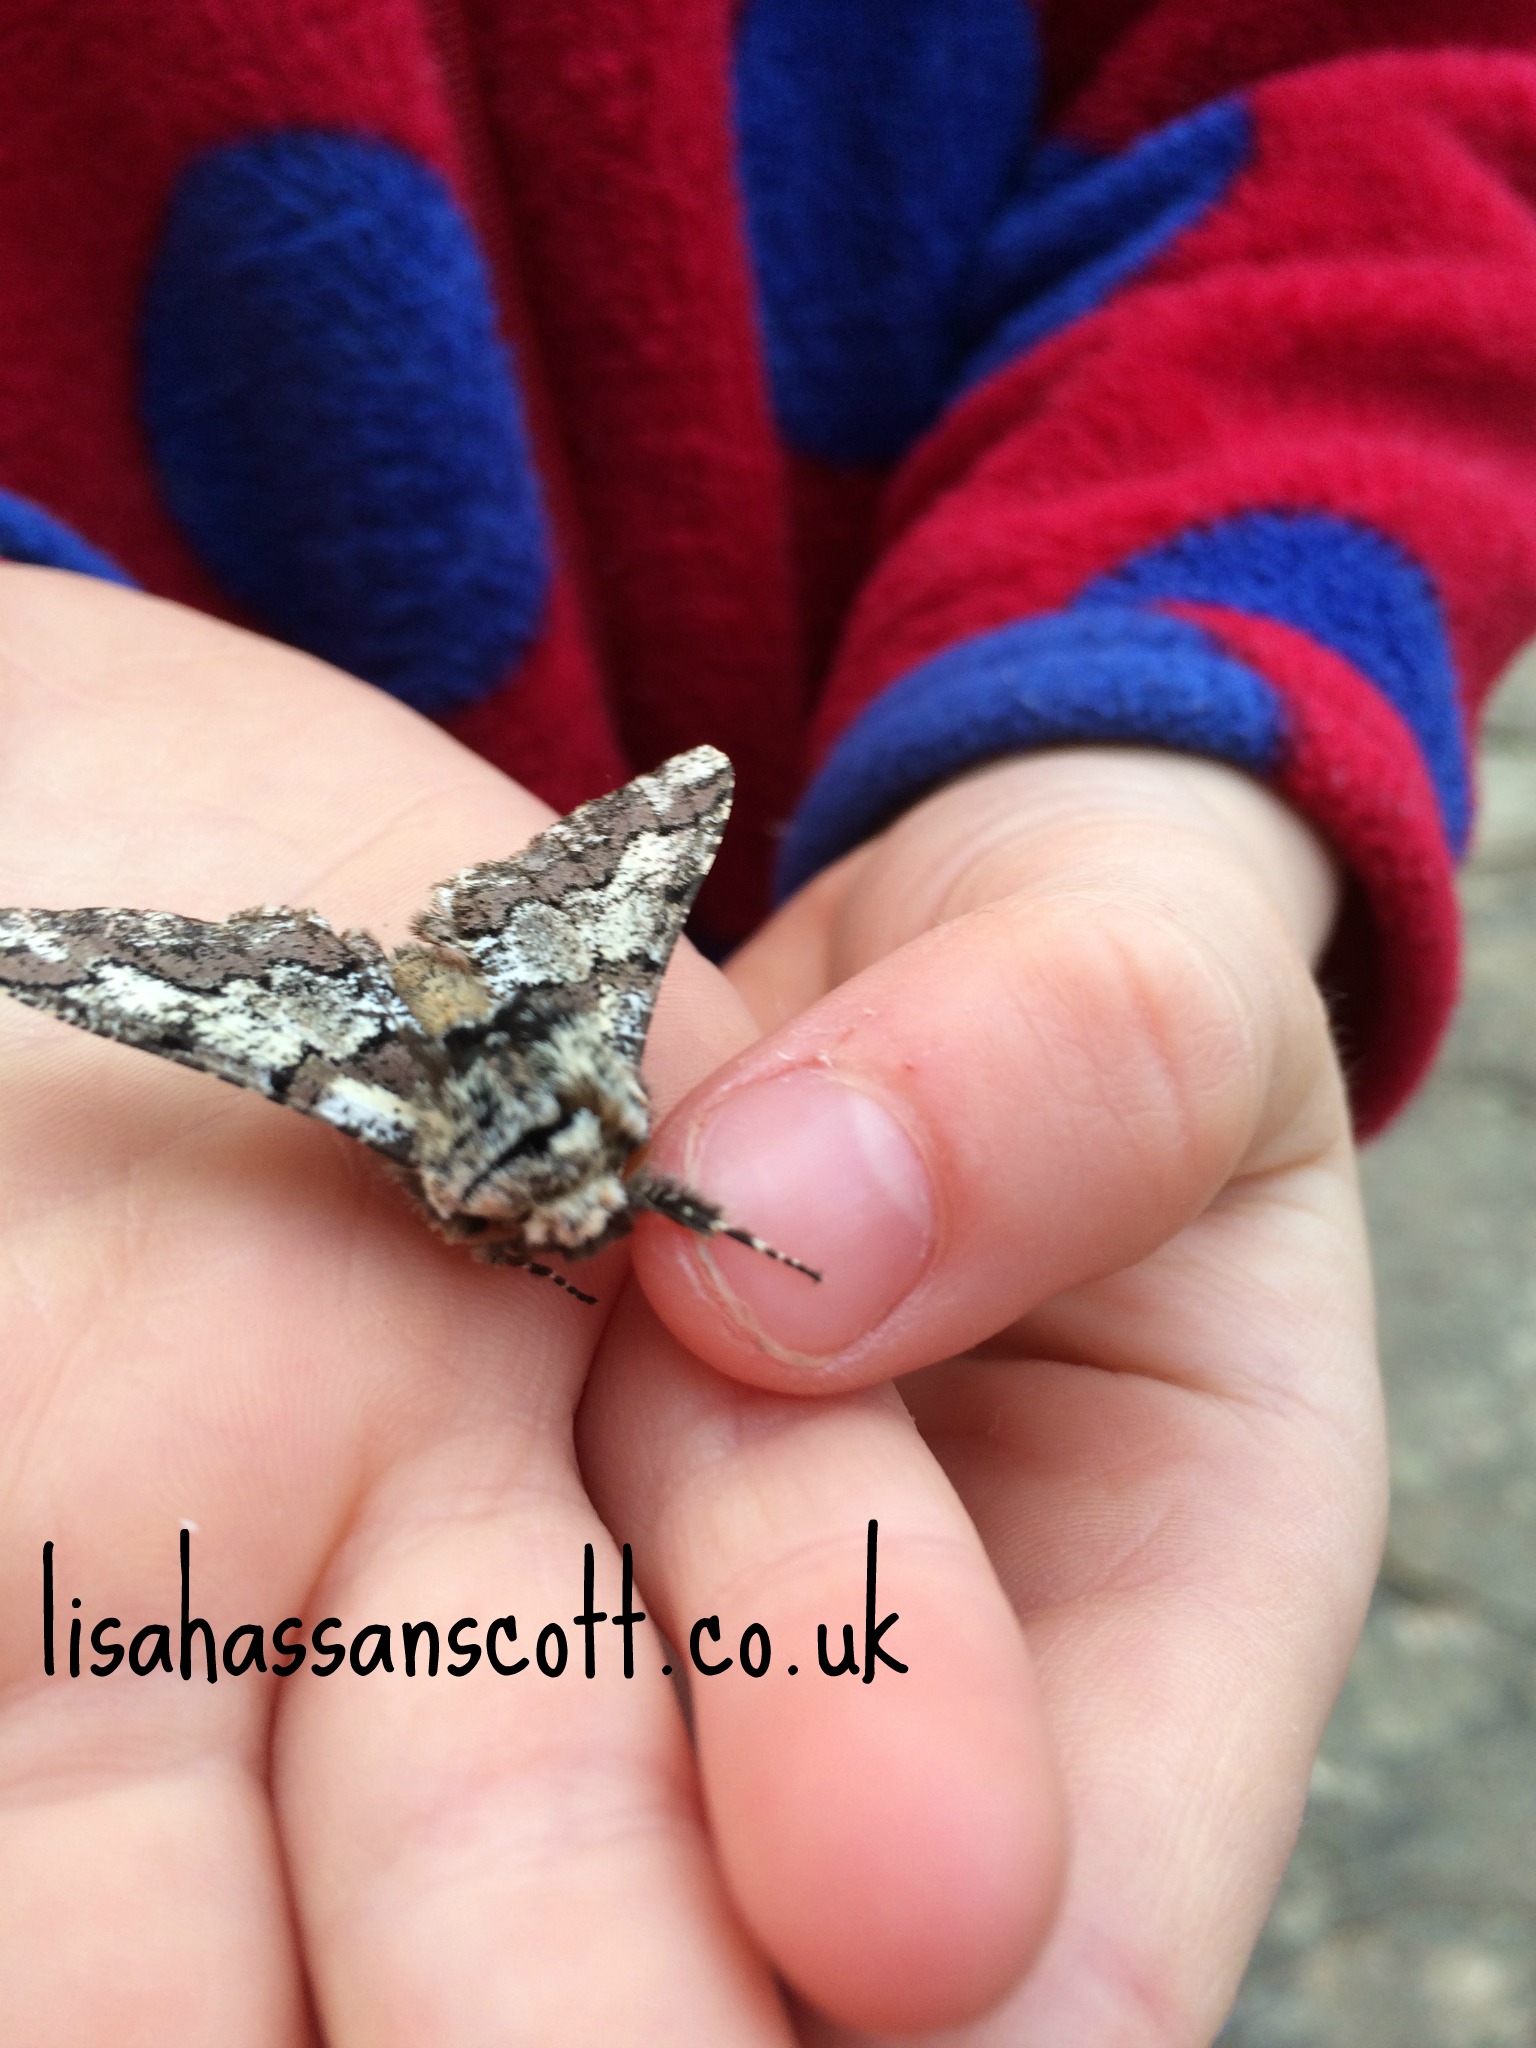 moth in hands